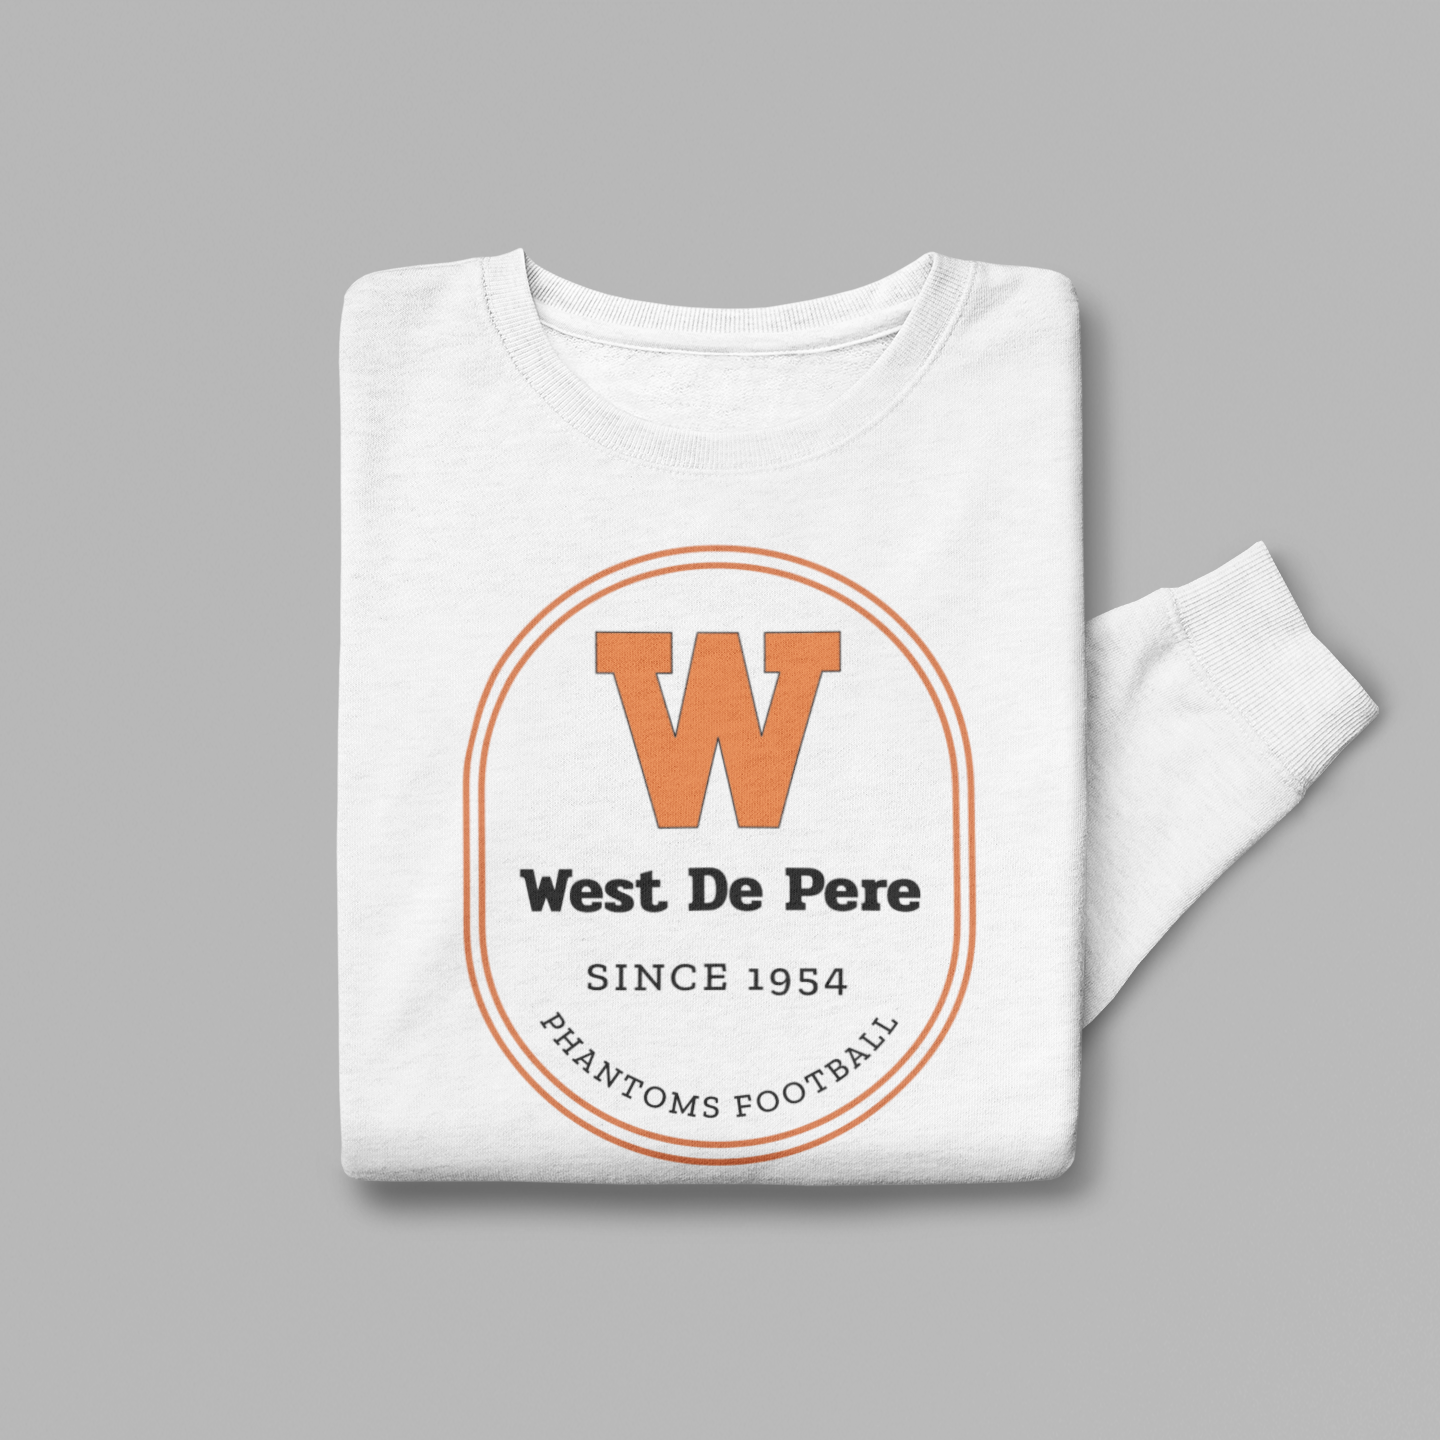 West De Pere Phantoms Football Merch - Tees, Long Sleeve Tee, Crewneck or Hoodie - Since 1954